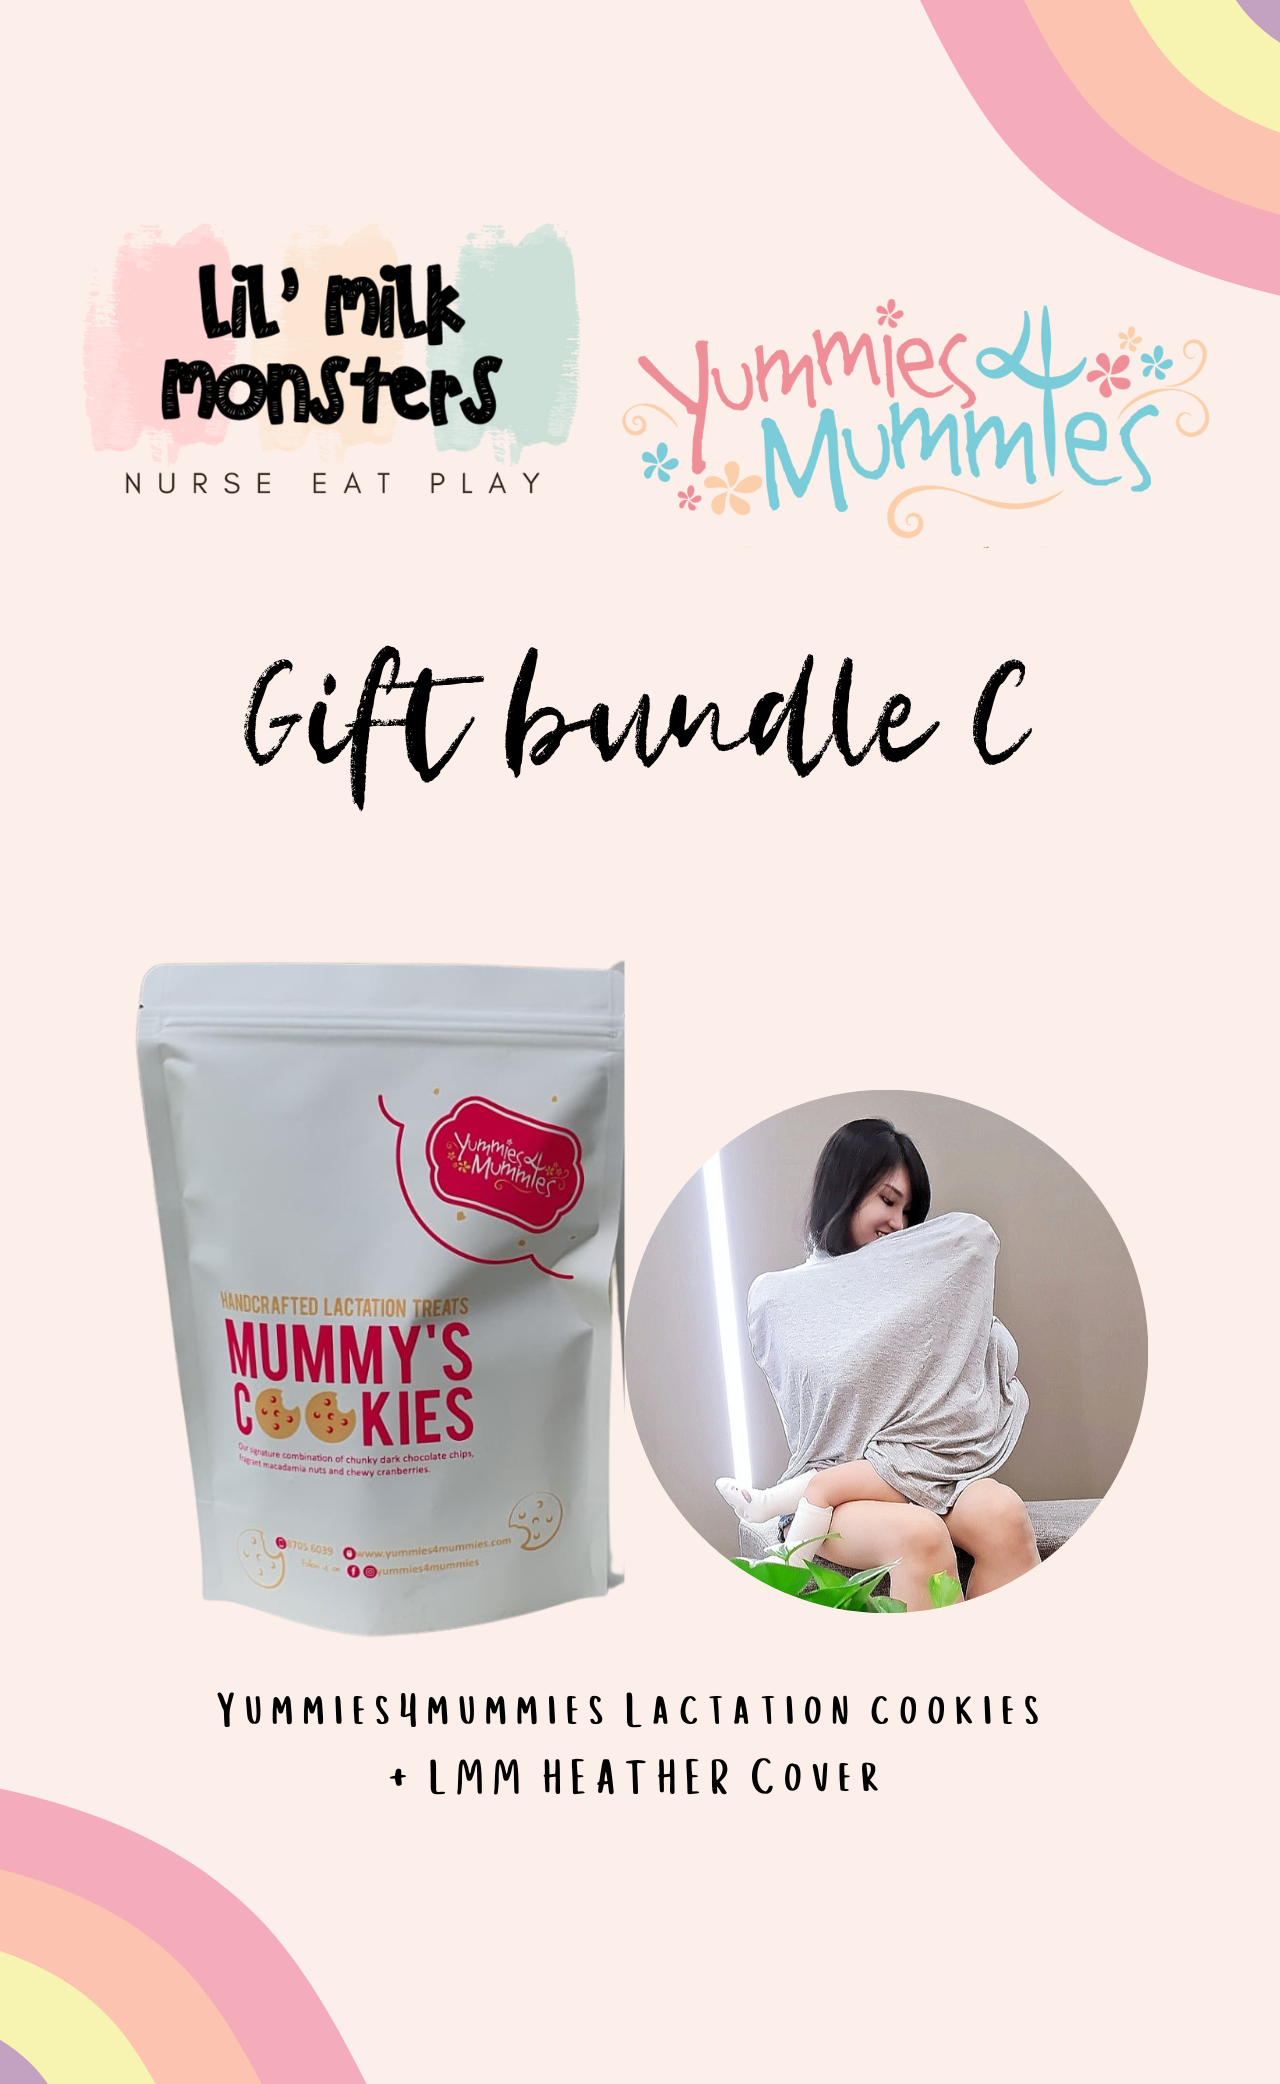 Lil' Milk Monsters x Yummies4mummies Gift Bundle C (Cover + Cookie)